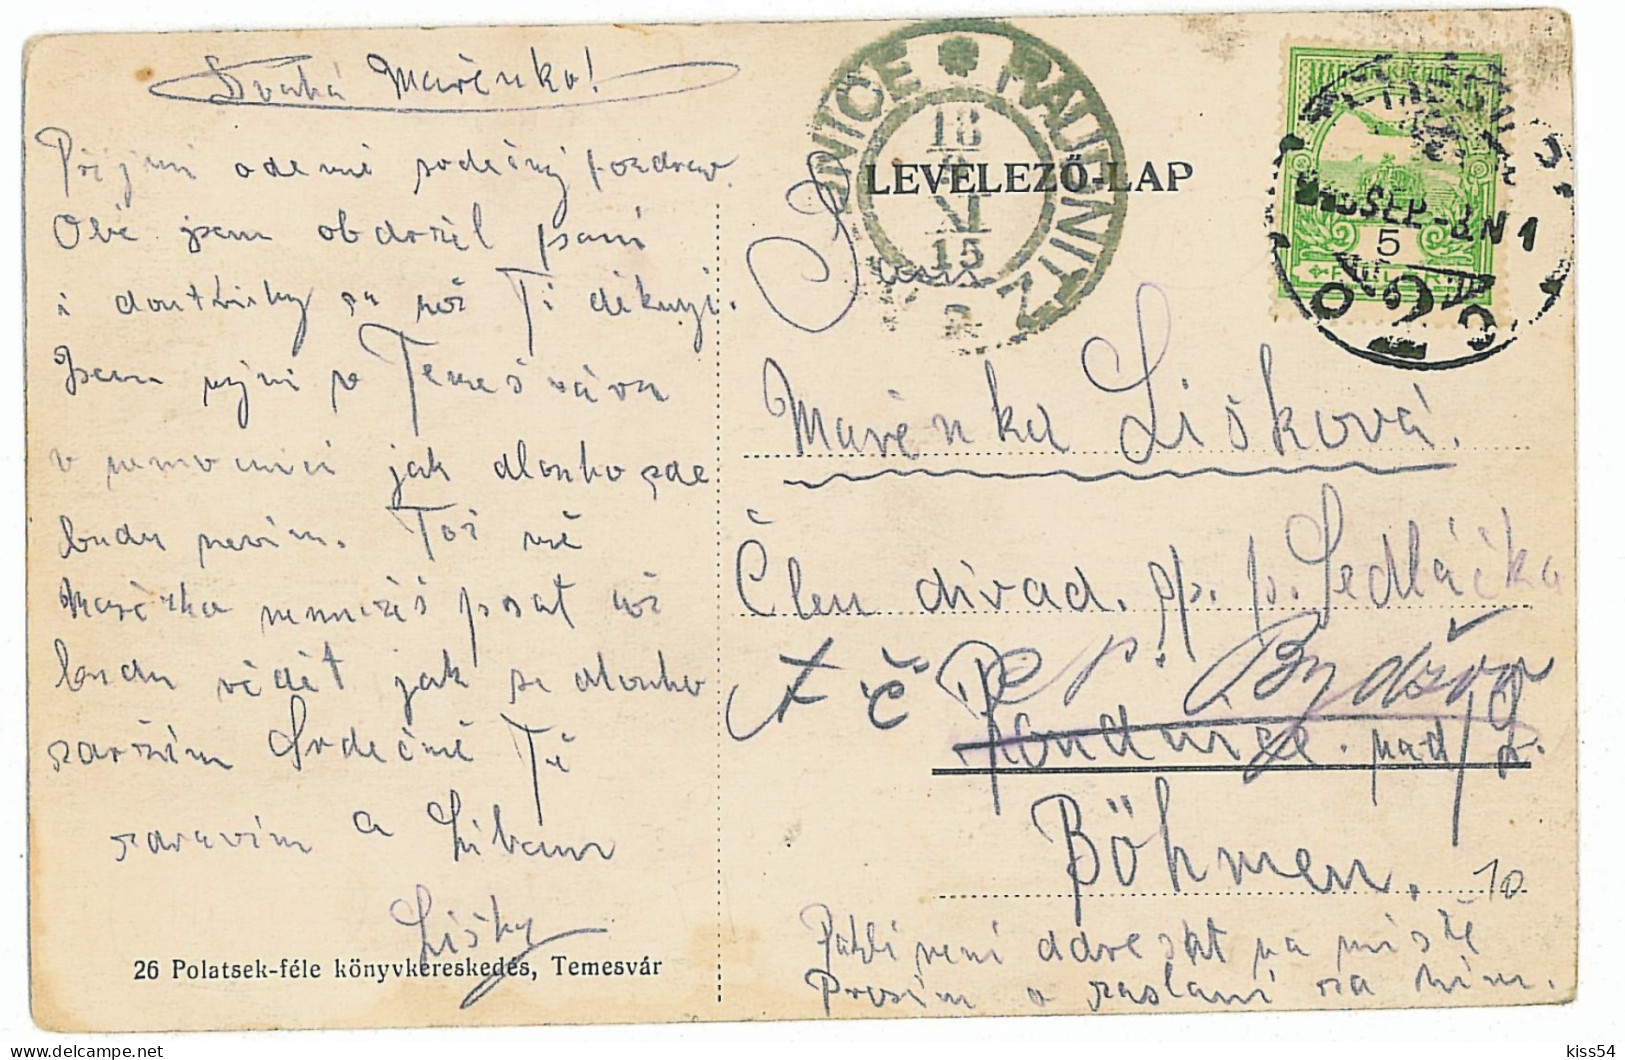 RO 40 - 2651 TIMISOARA, Synagogue, Romania - Old Postcard - Used - 1915 - Romania